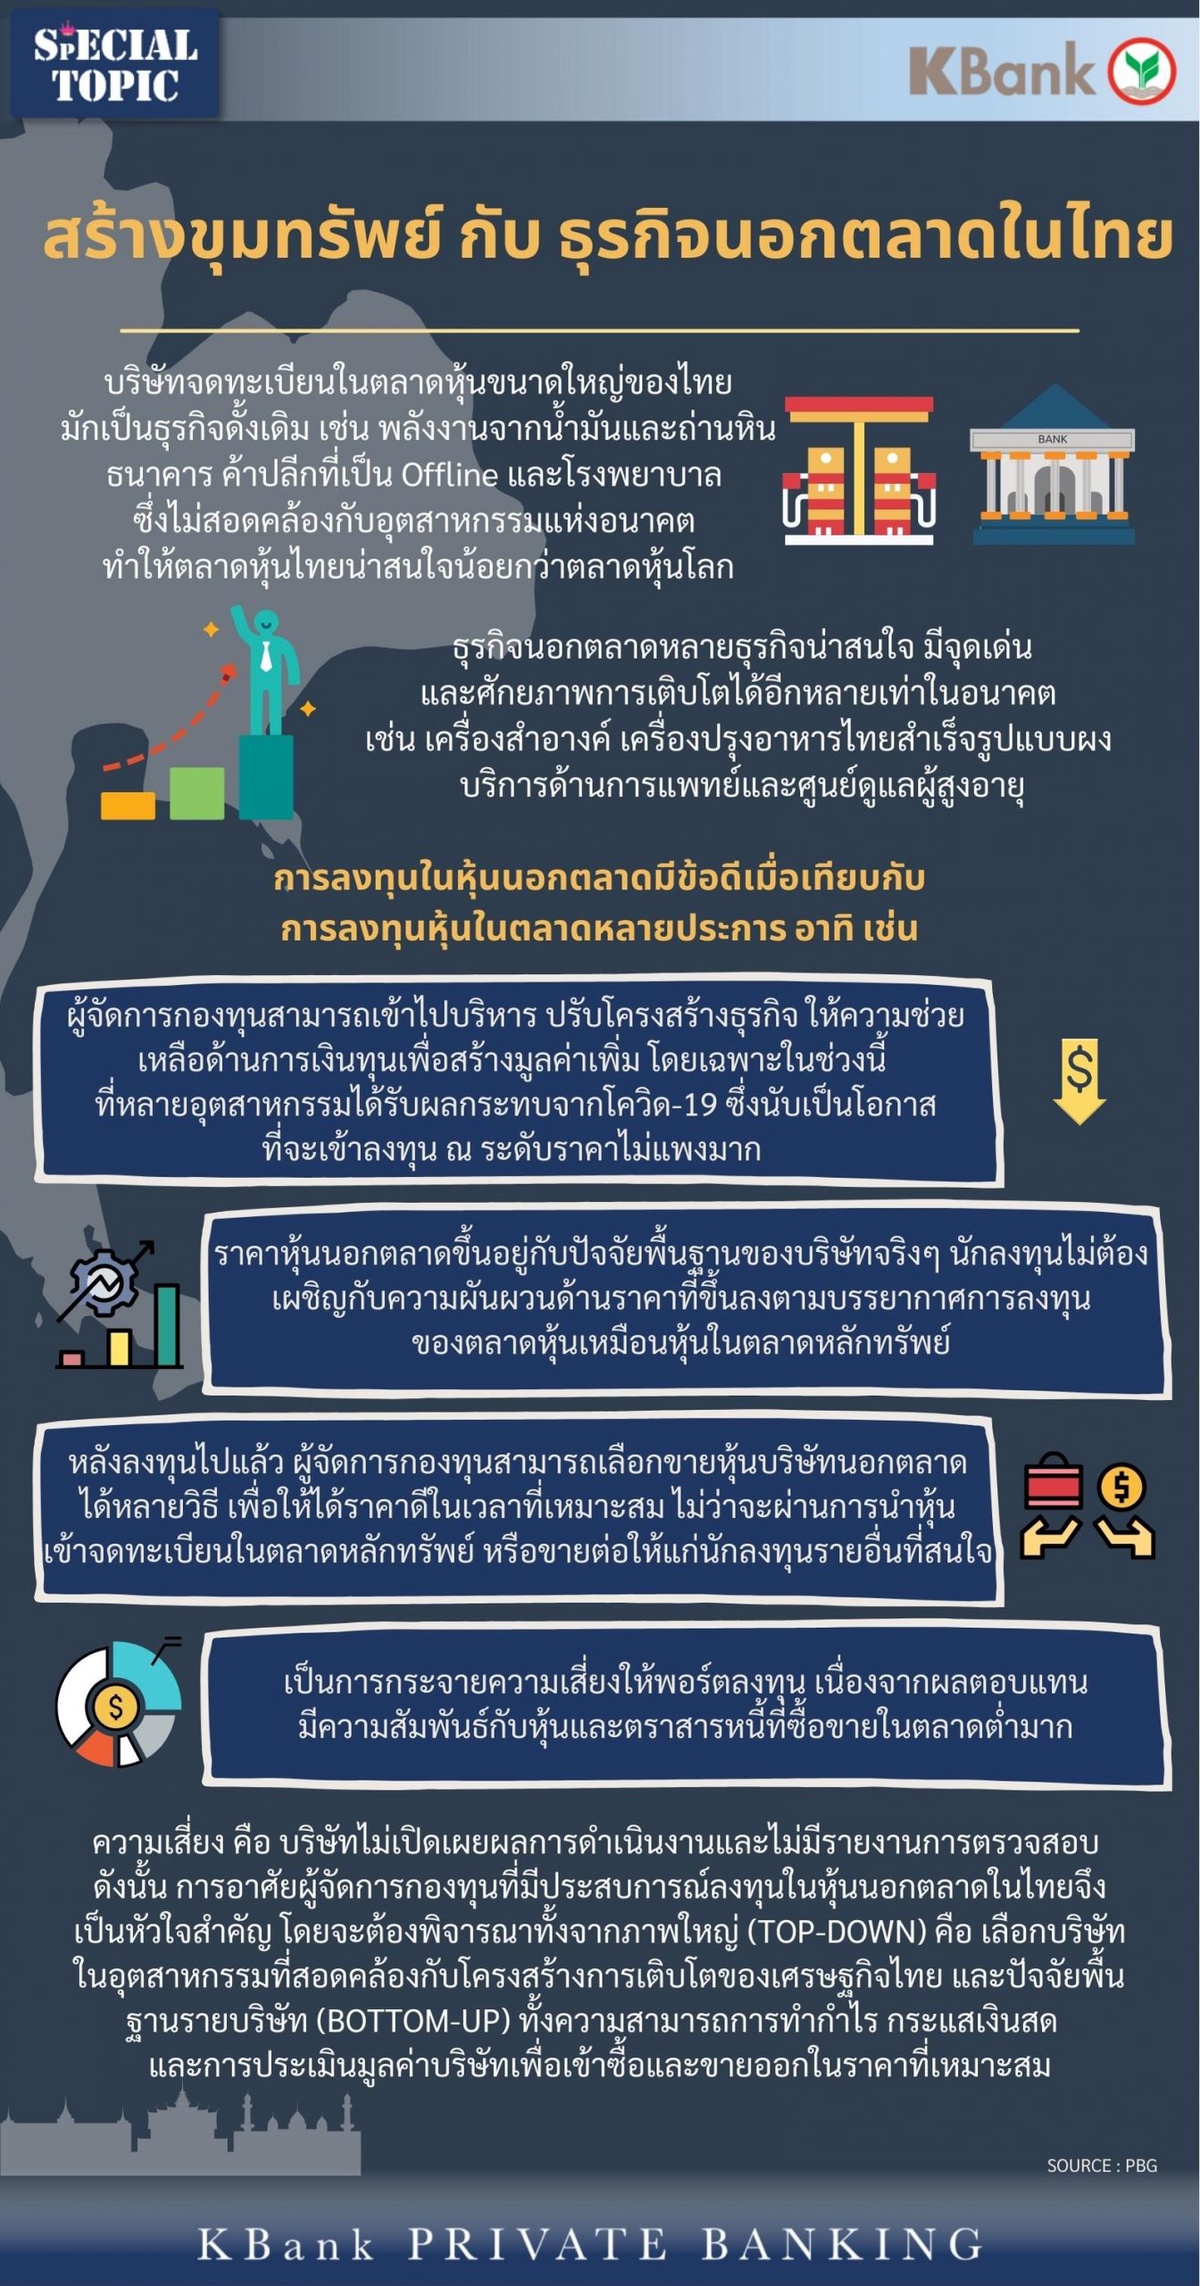 KBank Private Banking ส่ง LH-THAIPE1UI กองทุนหุ้นนอกตลาดแรกของไทย ชูโอกาสสร้างผลตอบแทนจากสินทรัพย์ทางเลือกที่ลงทุนในธุรกิจศักยภาพสูง พร้อมขับเคลื่อนธุรกิจไทย